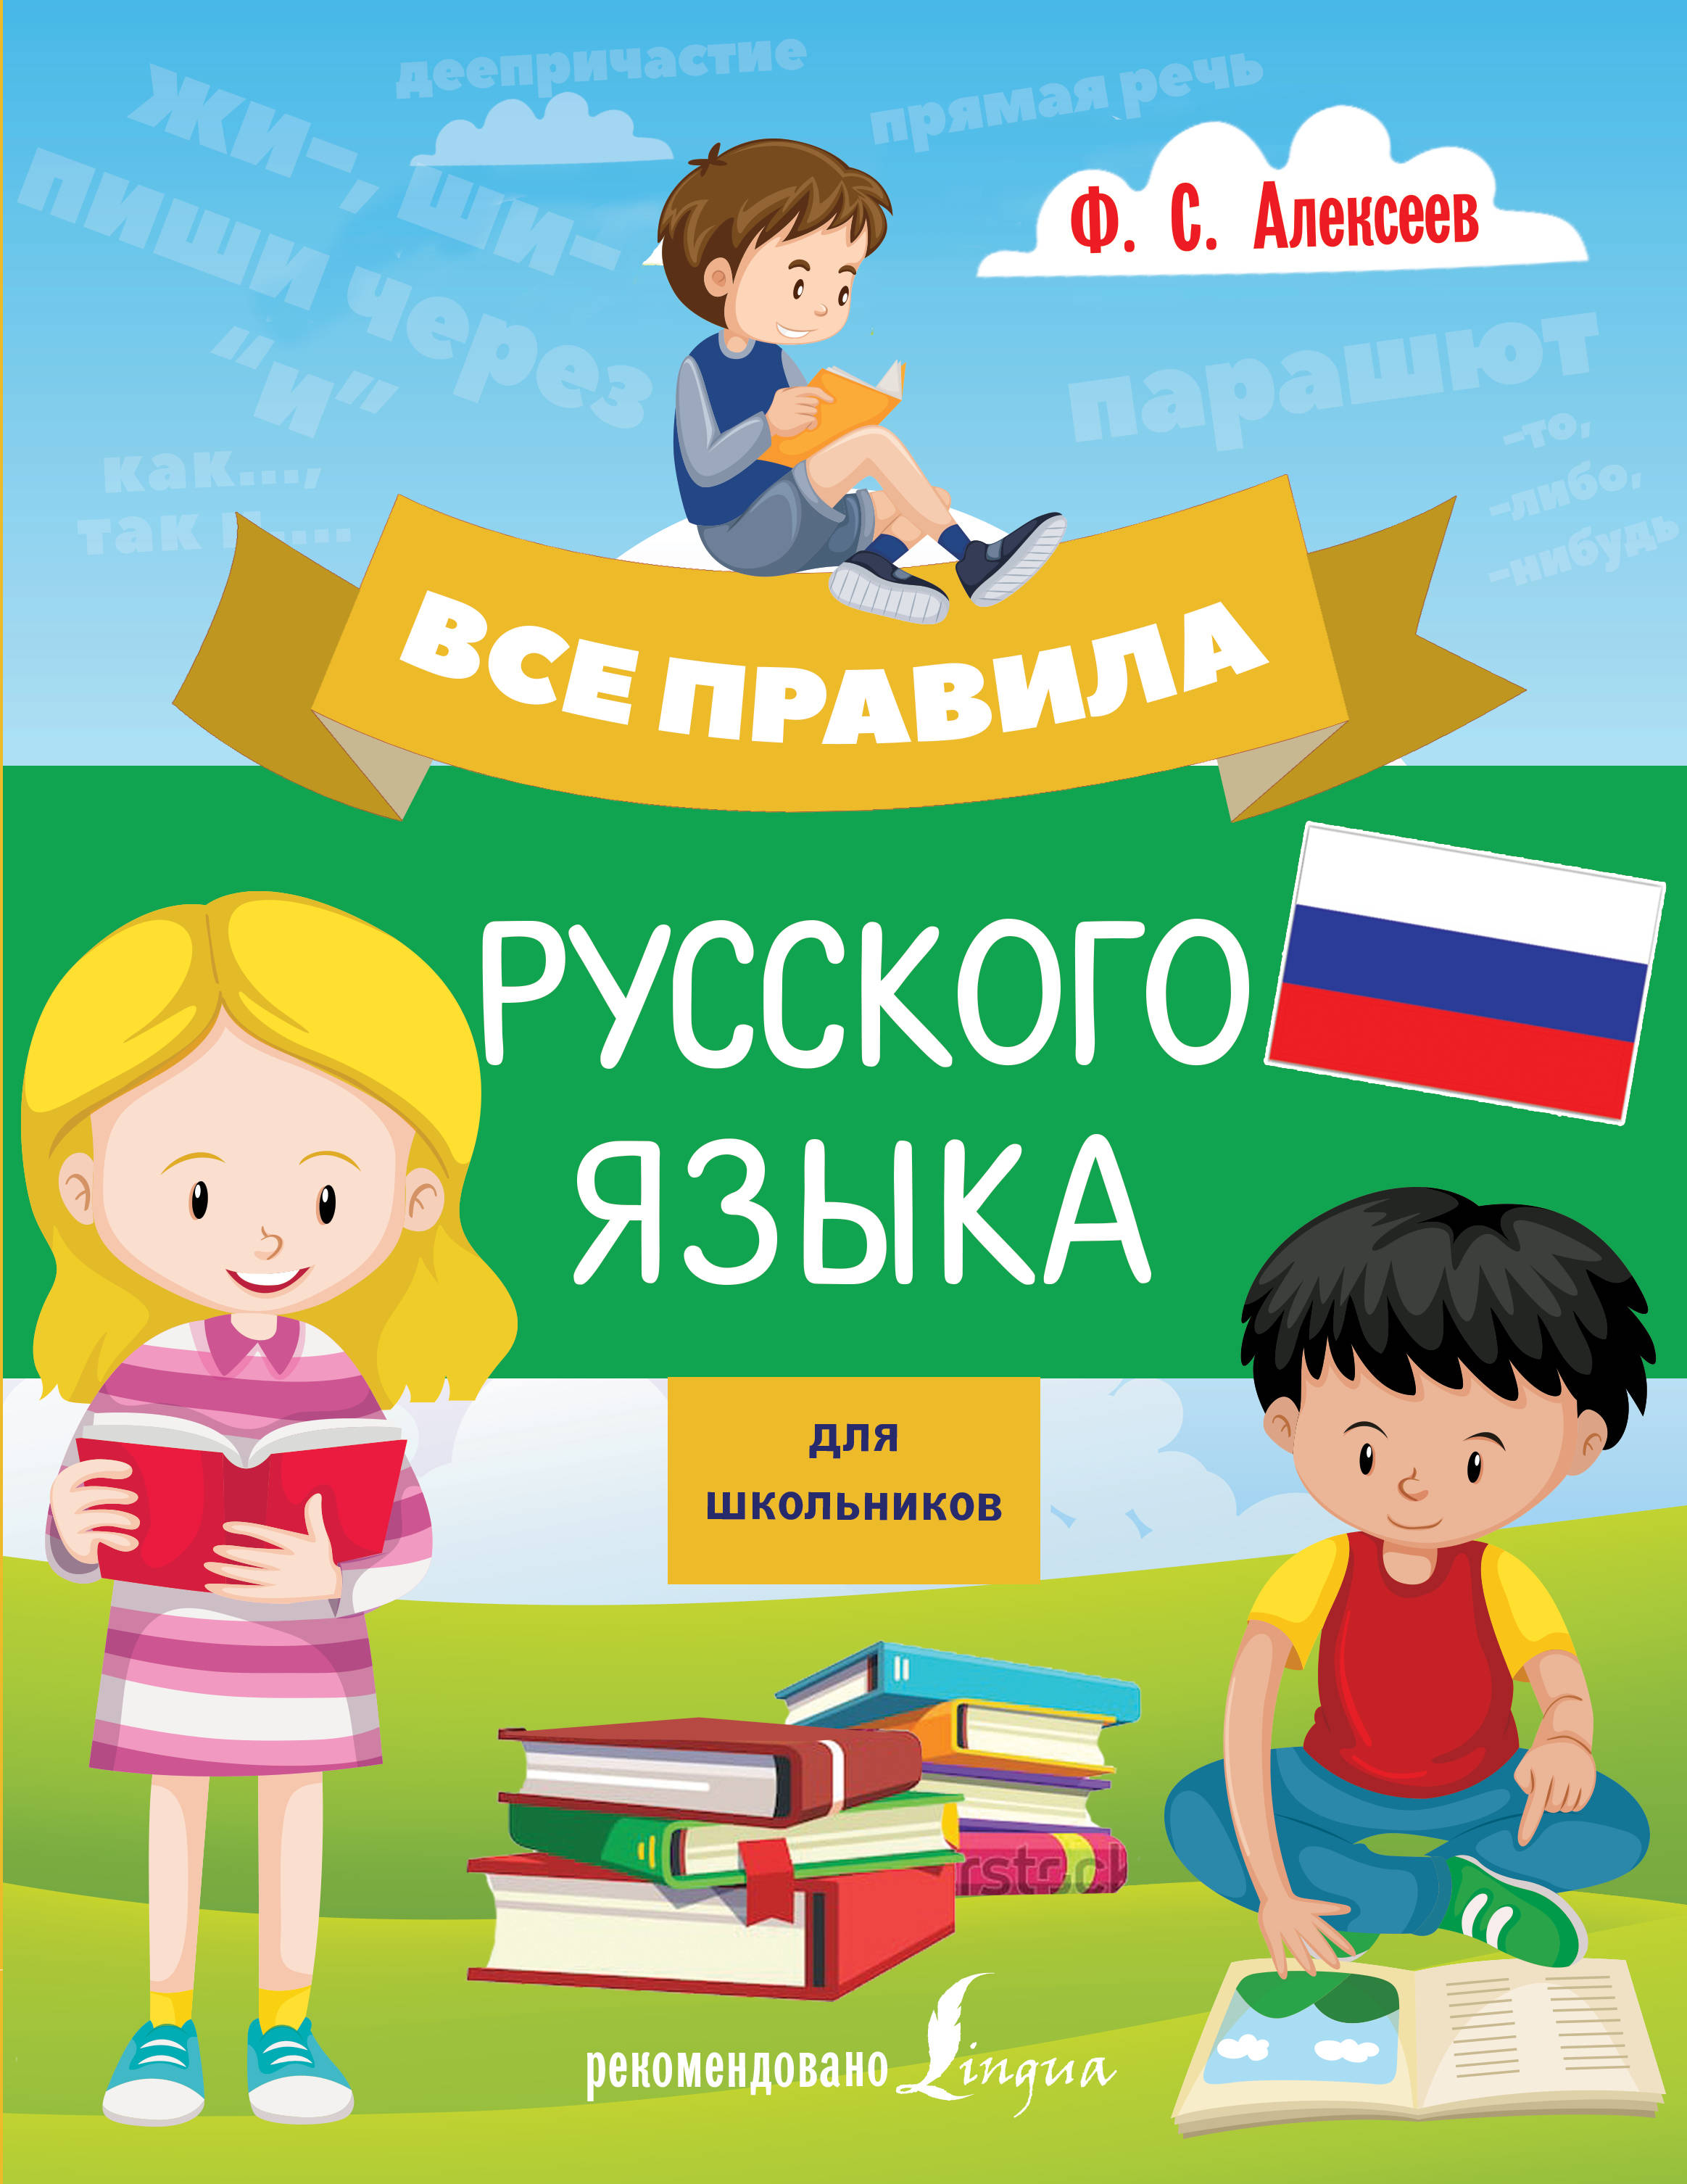 Изучать русский язык дети. Изучение русского языка. Изучать русский язык. Учить русский язык. Русский язык для детей.